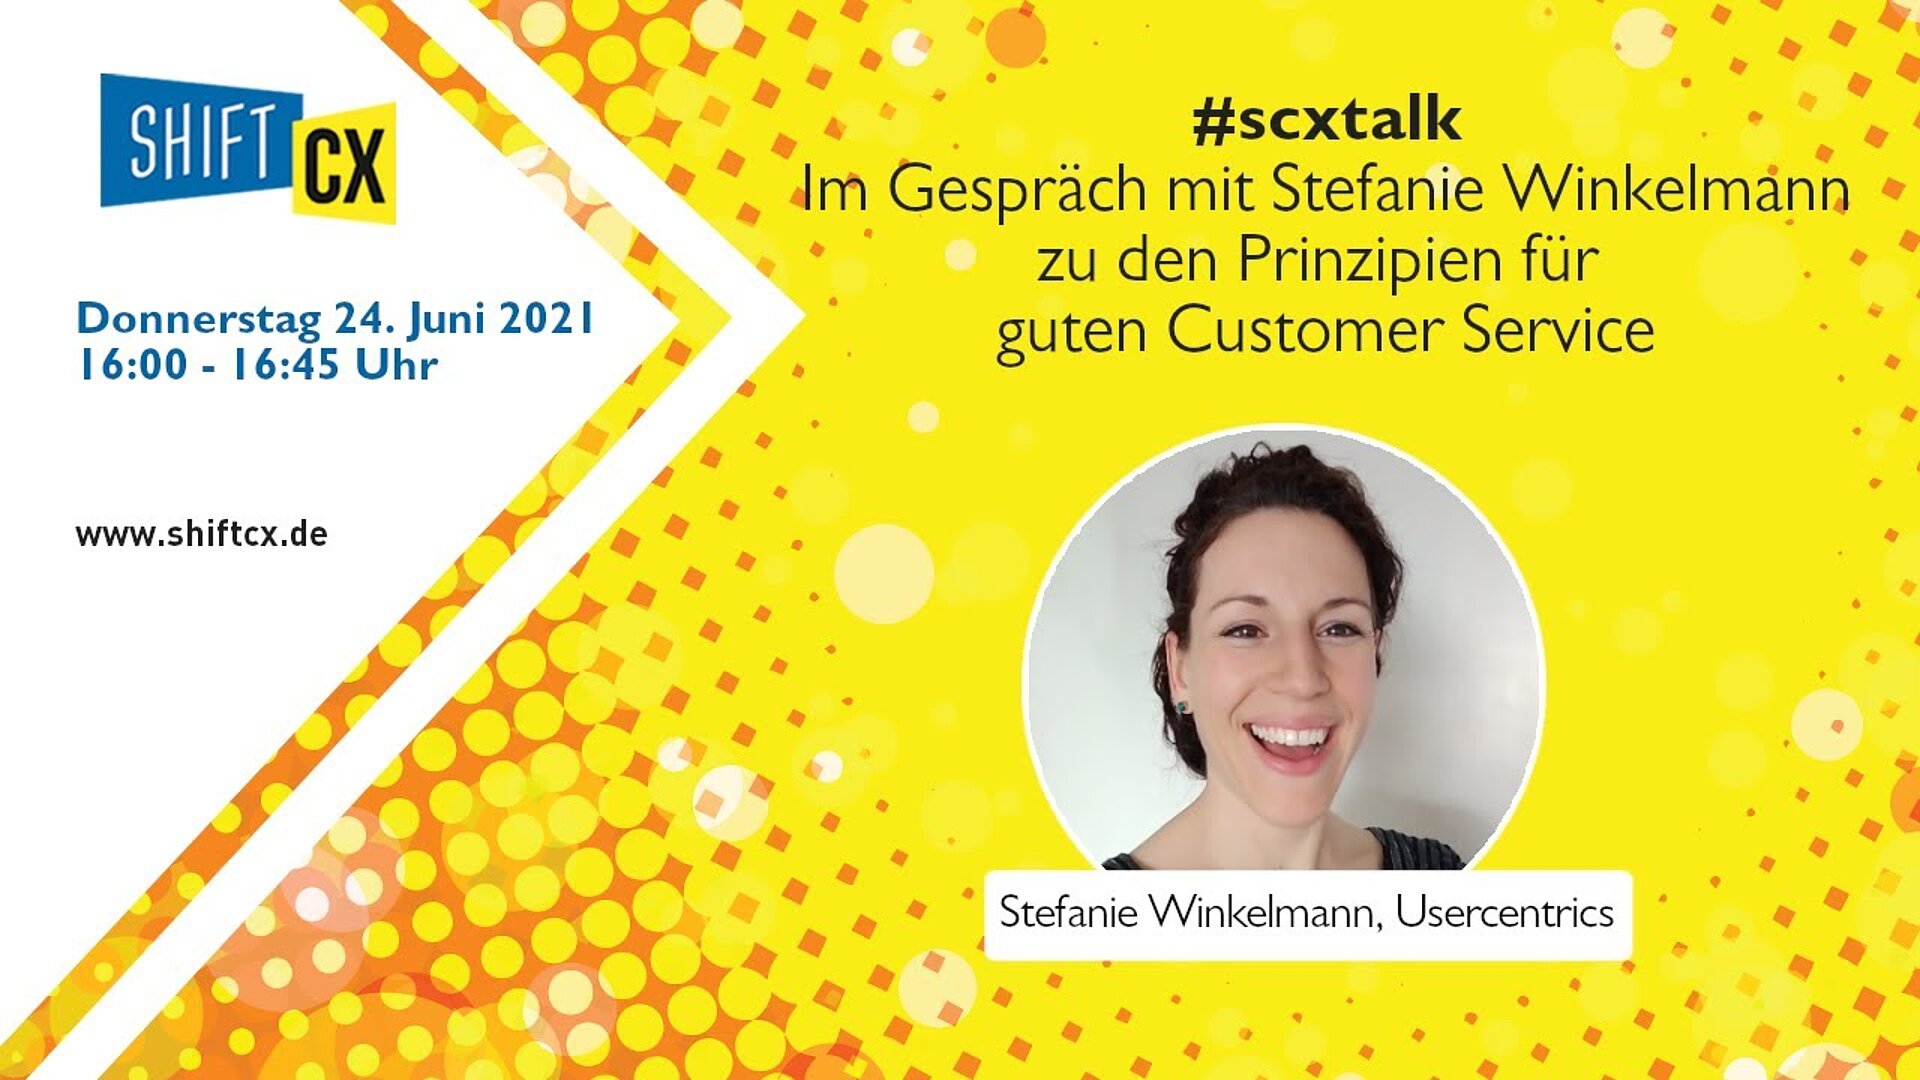 Im Gespräch mit Stefanie Winkelmann zu den Erfolgsfaktoren für exzellenten Kundenservice